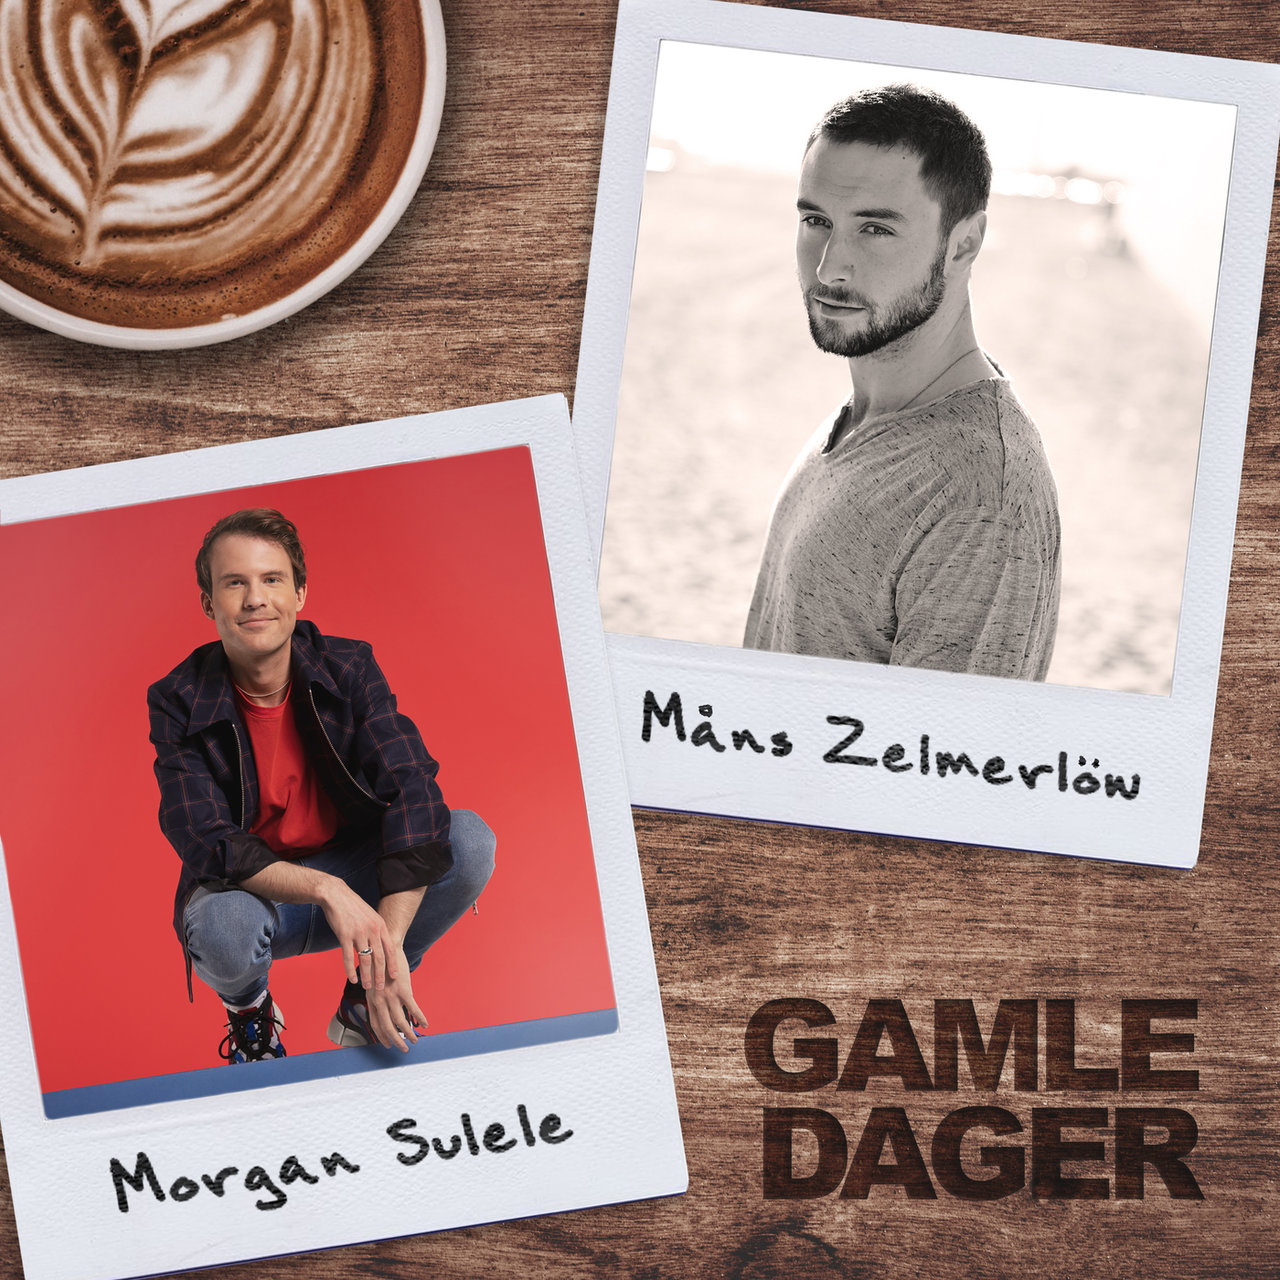 Morgan Sulele & Måns Zelmerlöw Gamle Dager cover artwork